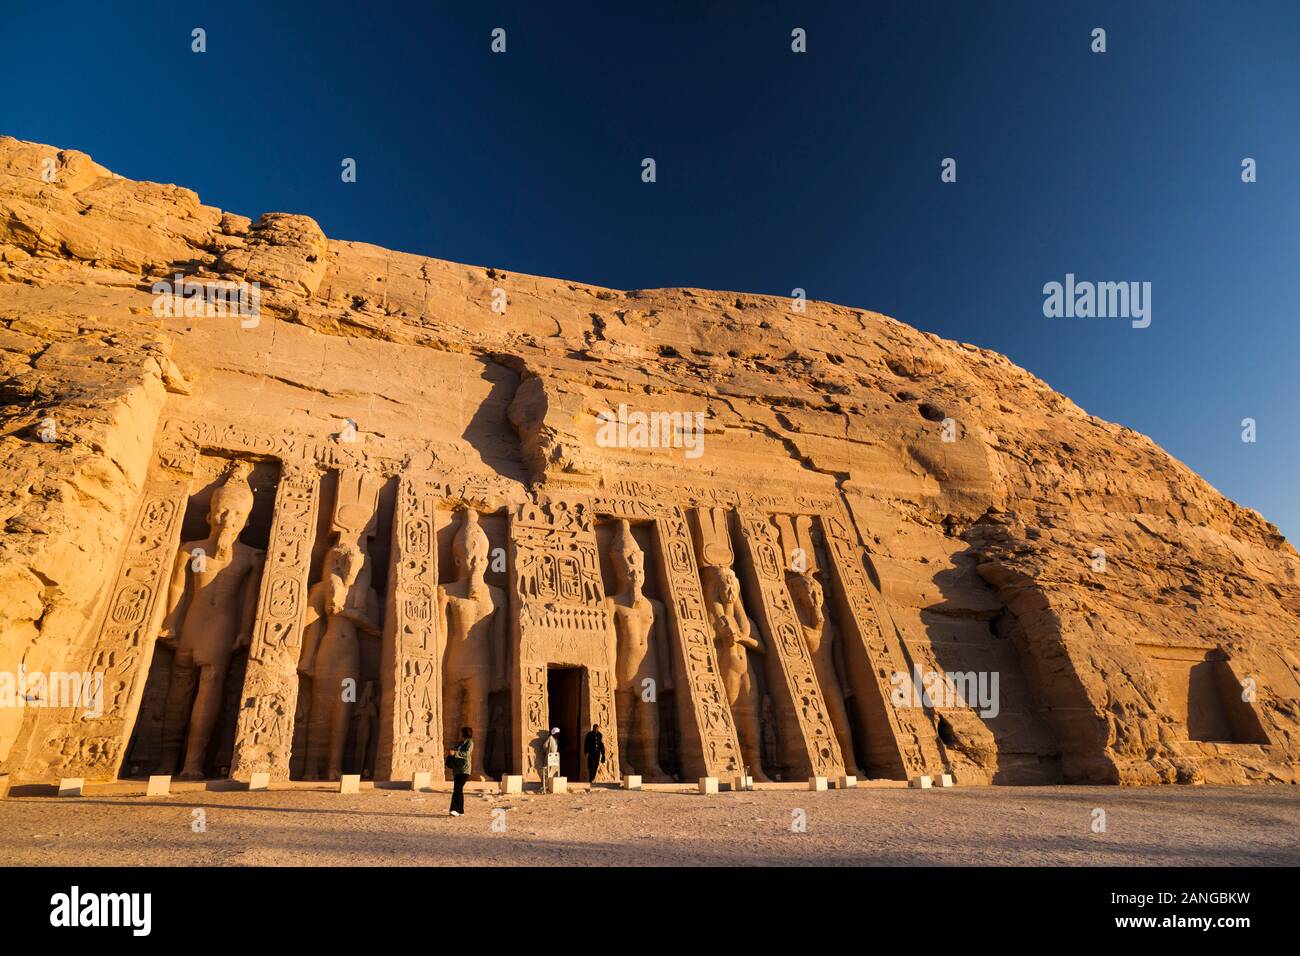 Scène matinale des temples de Nefertari, Temple de Nefertari, temples d'Abu Simbel, Monuments nubiens, gouvernorat d'Assouan, Egypte, Afrique du Nord, Afrique Banque D'Images